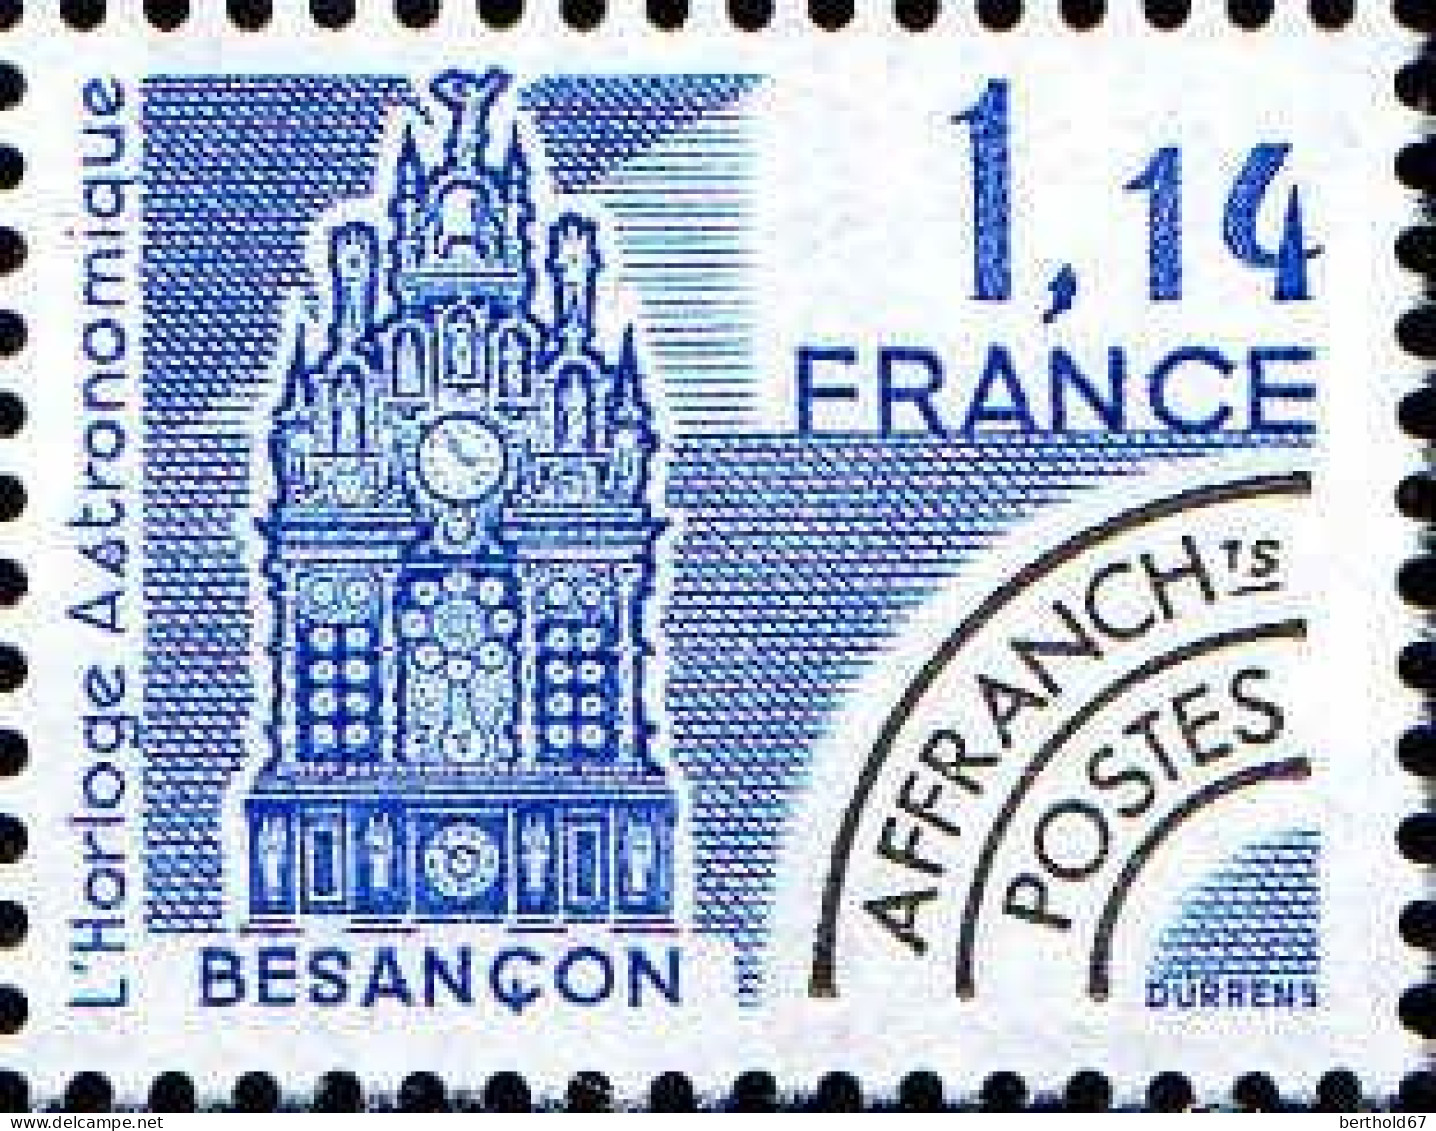 France Préo Yv:171 Mi:2242 Besançon L'horloge Astronomique (s.gomme) - 1964-1988